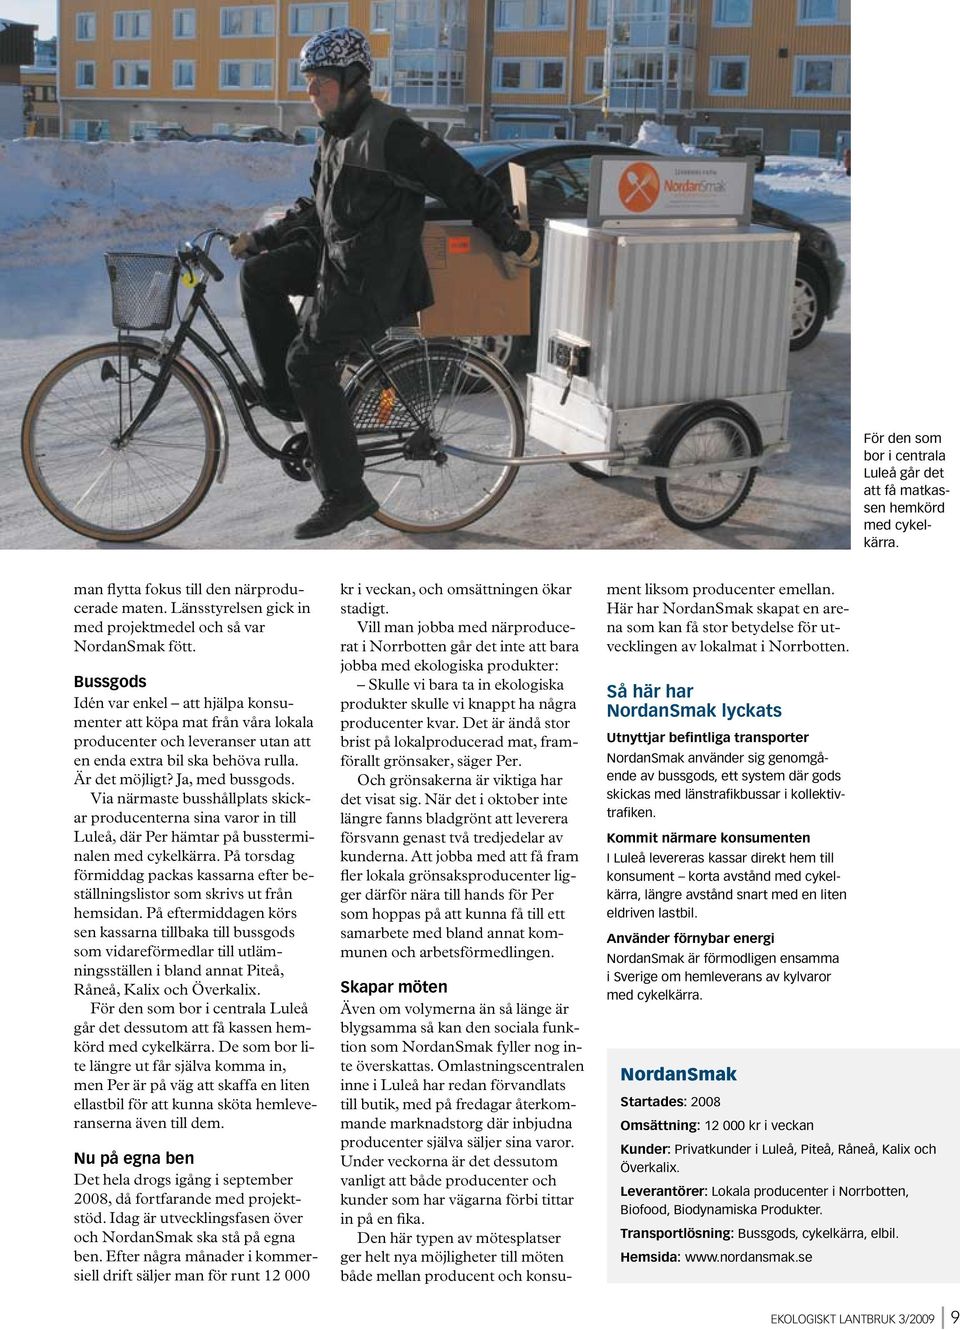 Via närmaste busshållplats skickar producenterna sina varor in till Luleå, där Per hämtar på bussterminalen med cykelkärra.